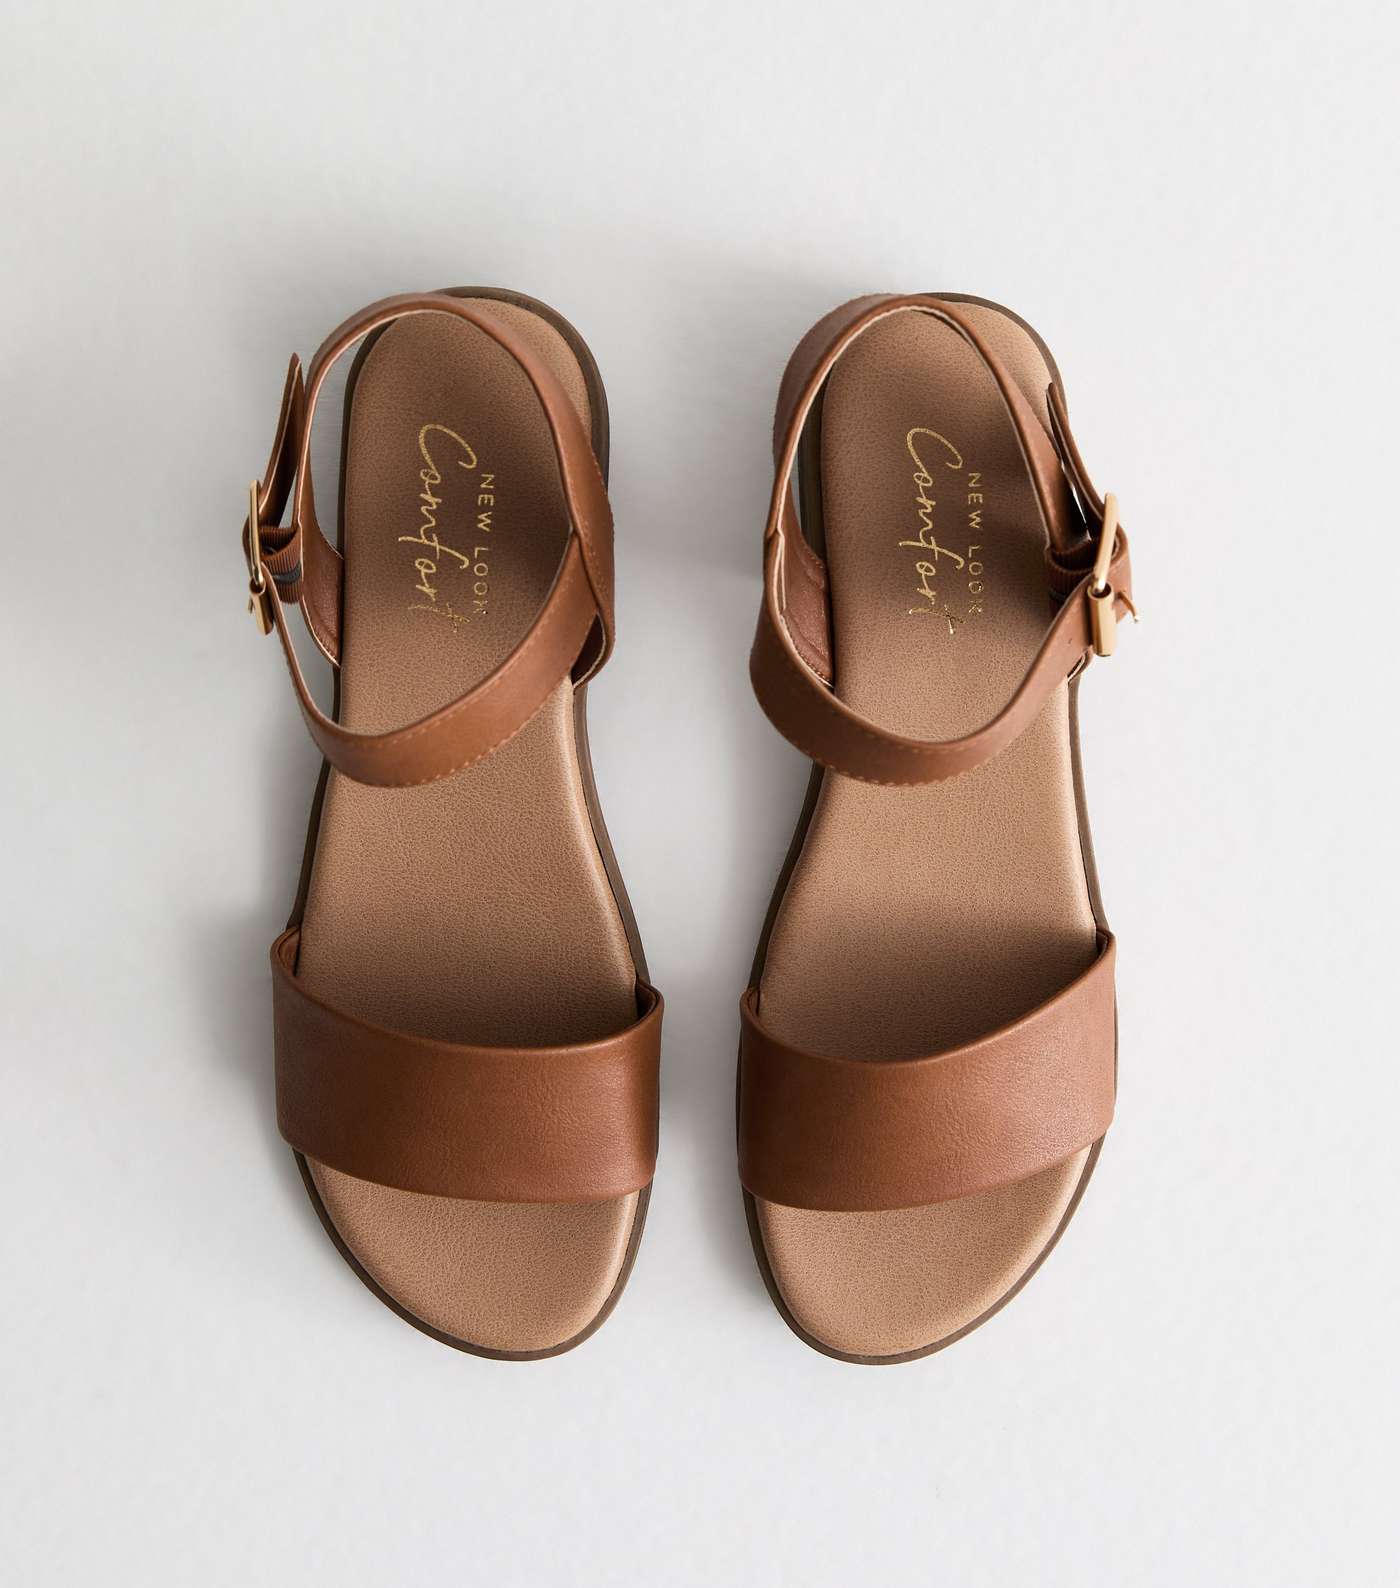 Tan Leather-Look Low Block Heel Sandals Image 5